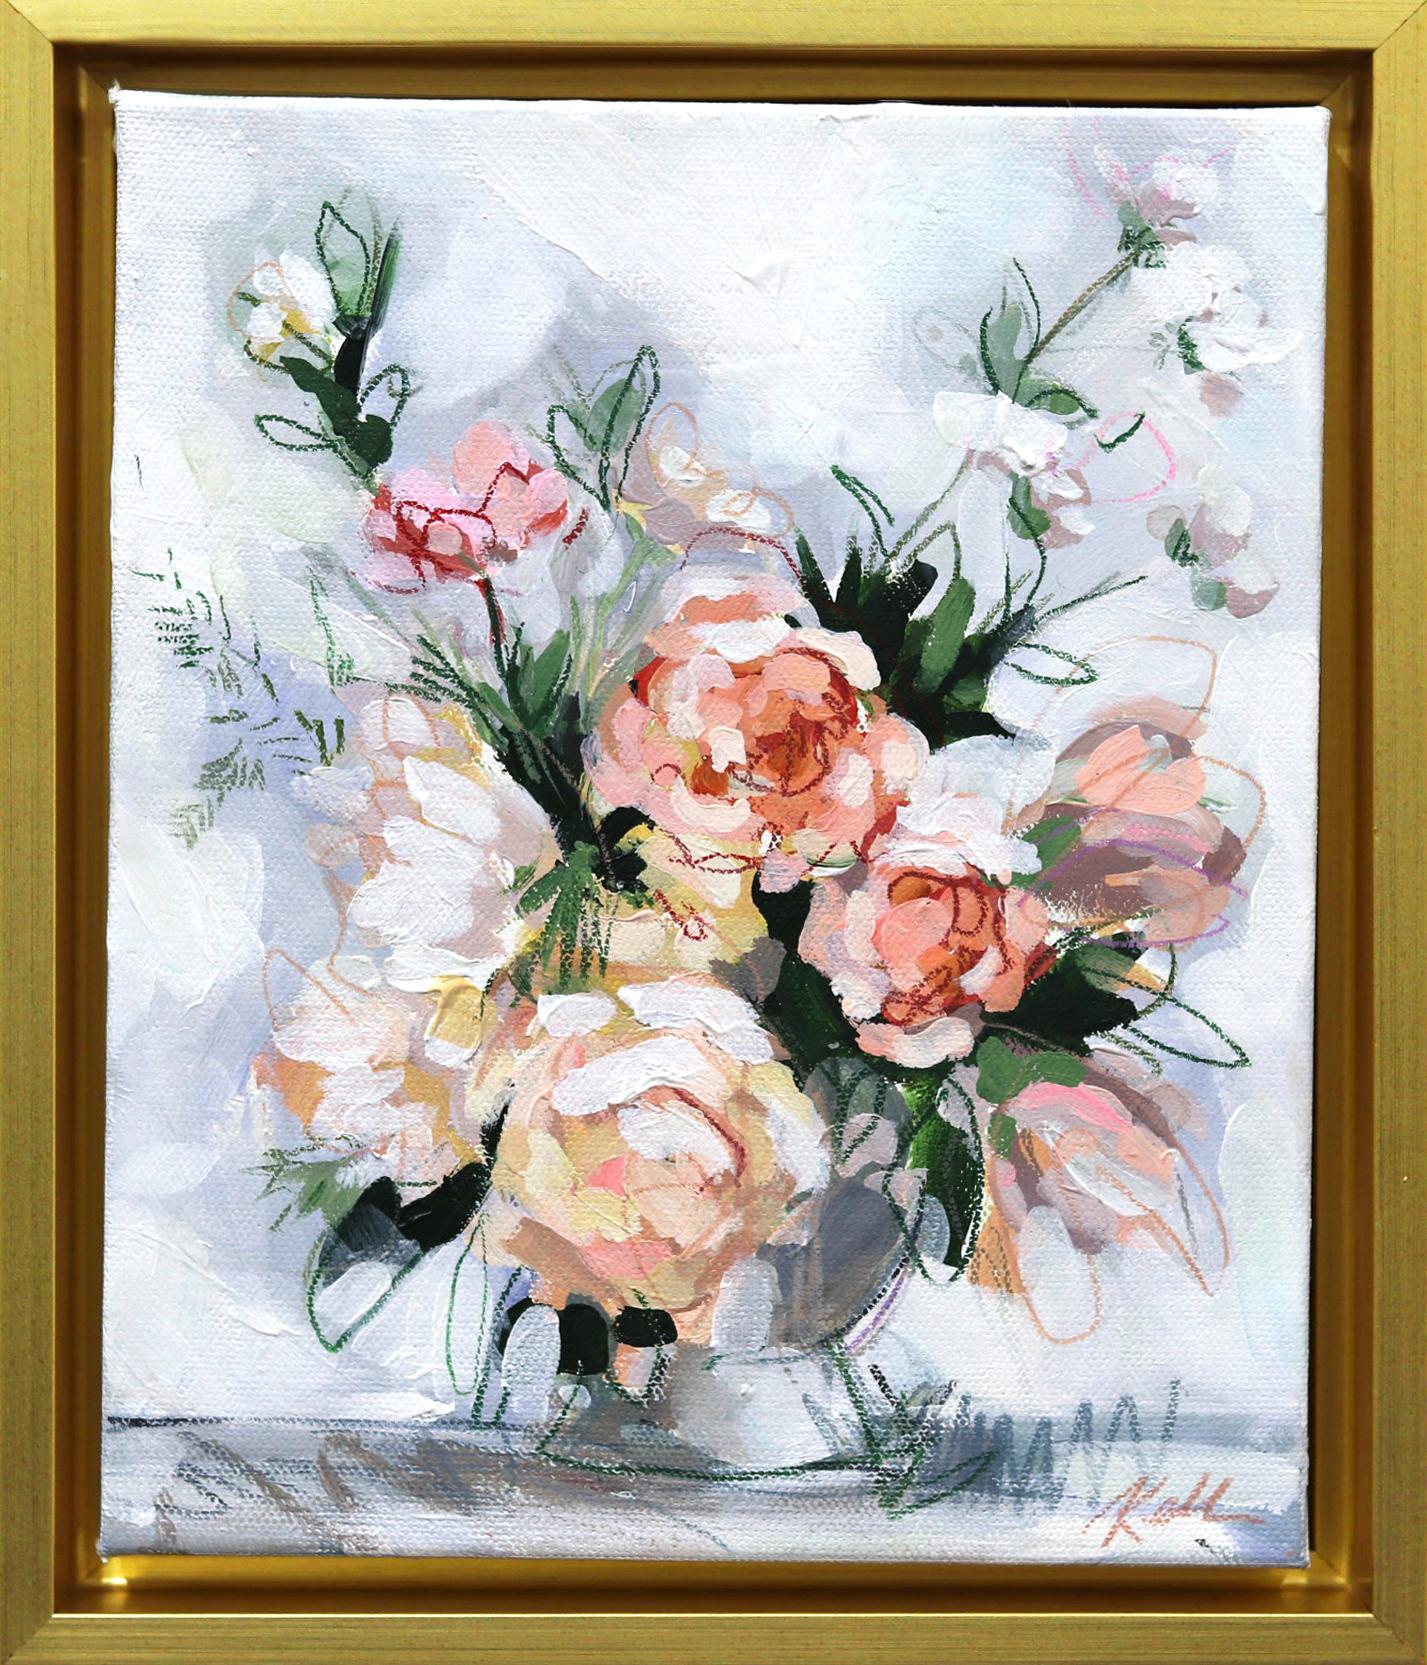 Elegance Blooms  - Original Framed Floral Painting on Canvas